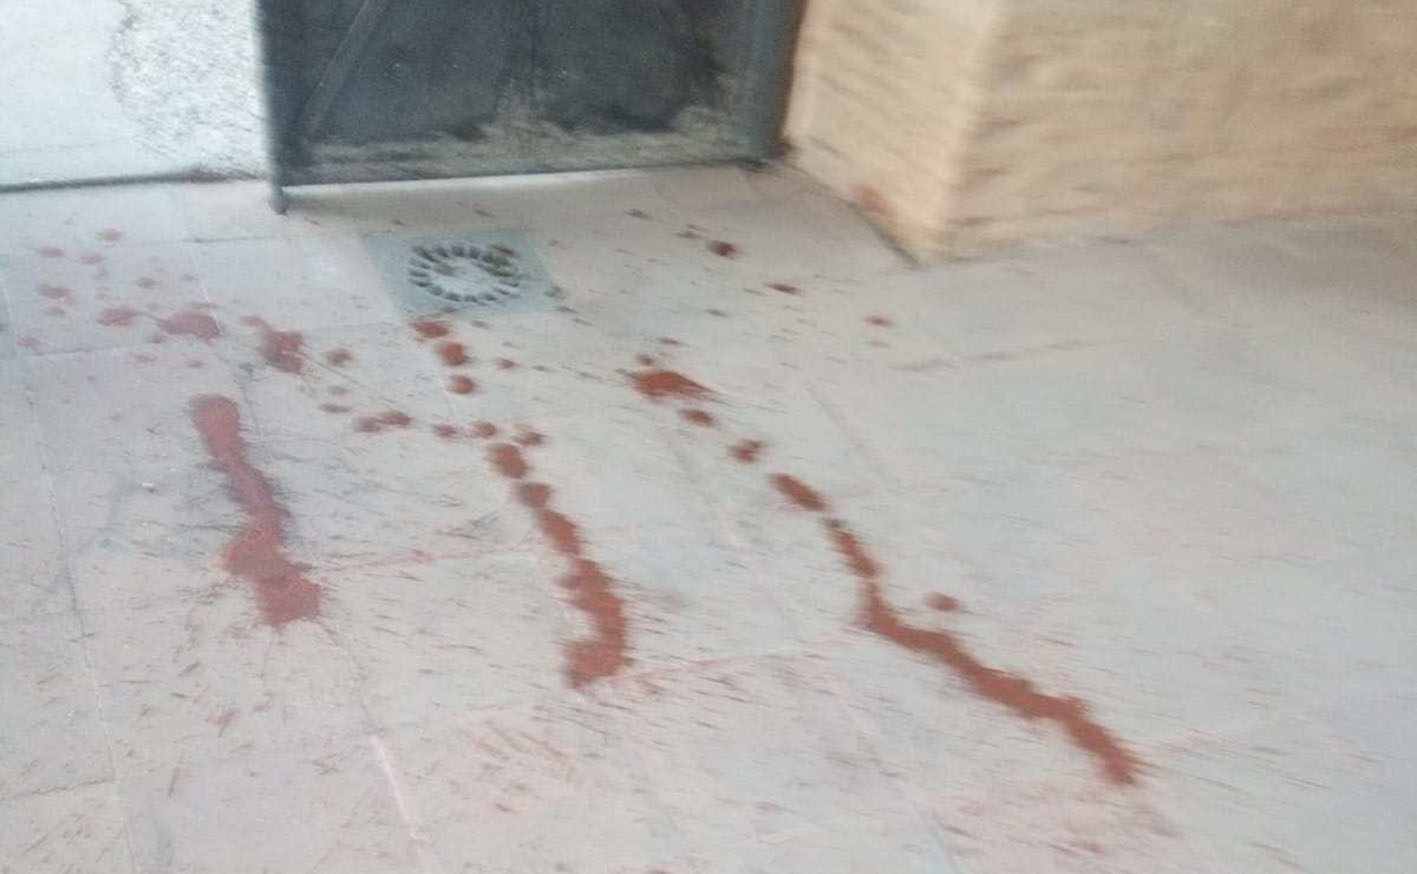 Rastros de ketchup tirados en el cementerio de Consuegra, como ha denunciado el ayuntamiento en su página web.